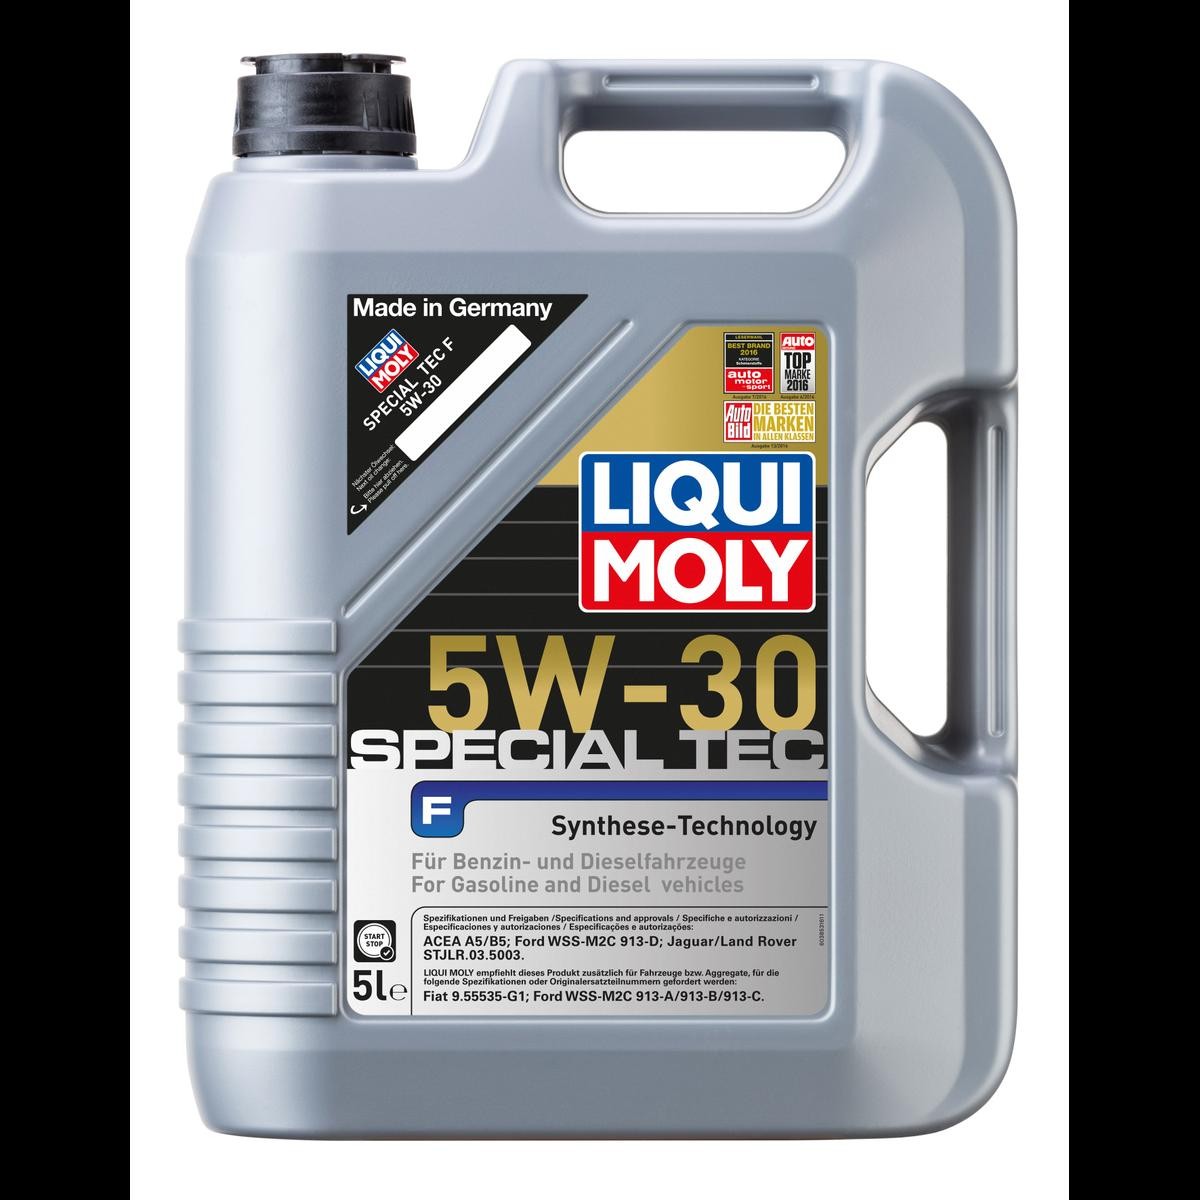 Lubrifiant liquide Moly+, Huile moteur synthétique & produits de  lubrification